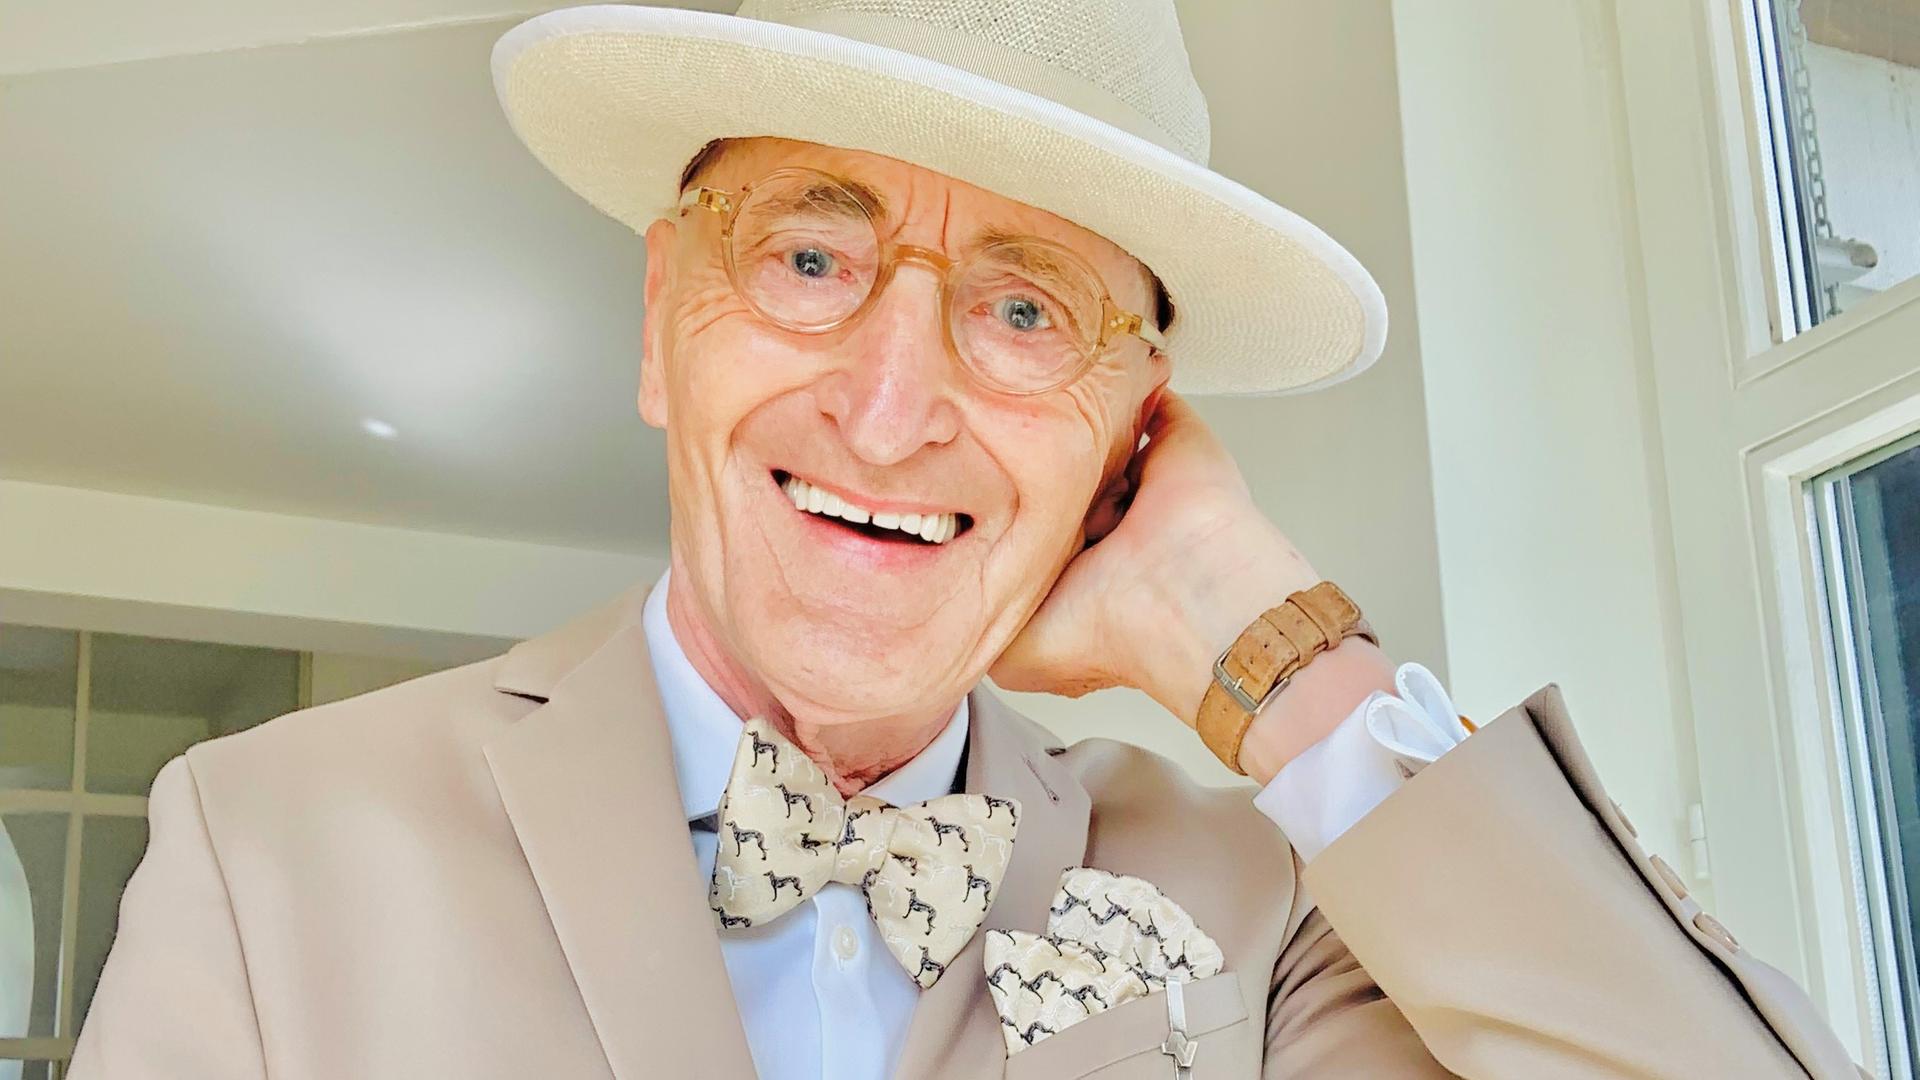 Das Herrenmodel Günther Krabbenhöft, 77, trägt einen hellen Anzug mit Fliege und Hut und lacht in die Kamera.